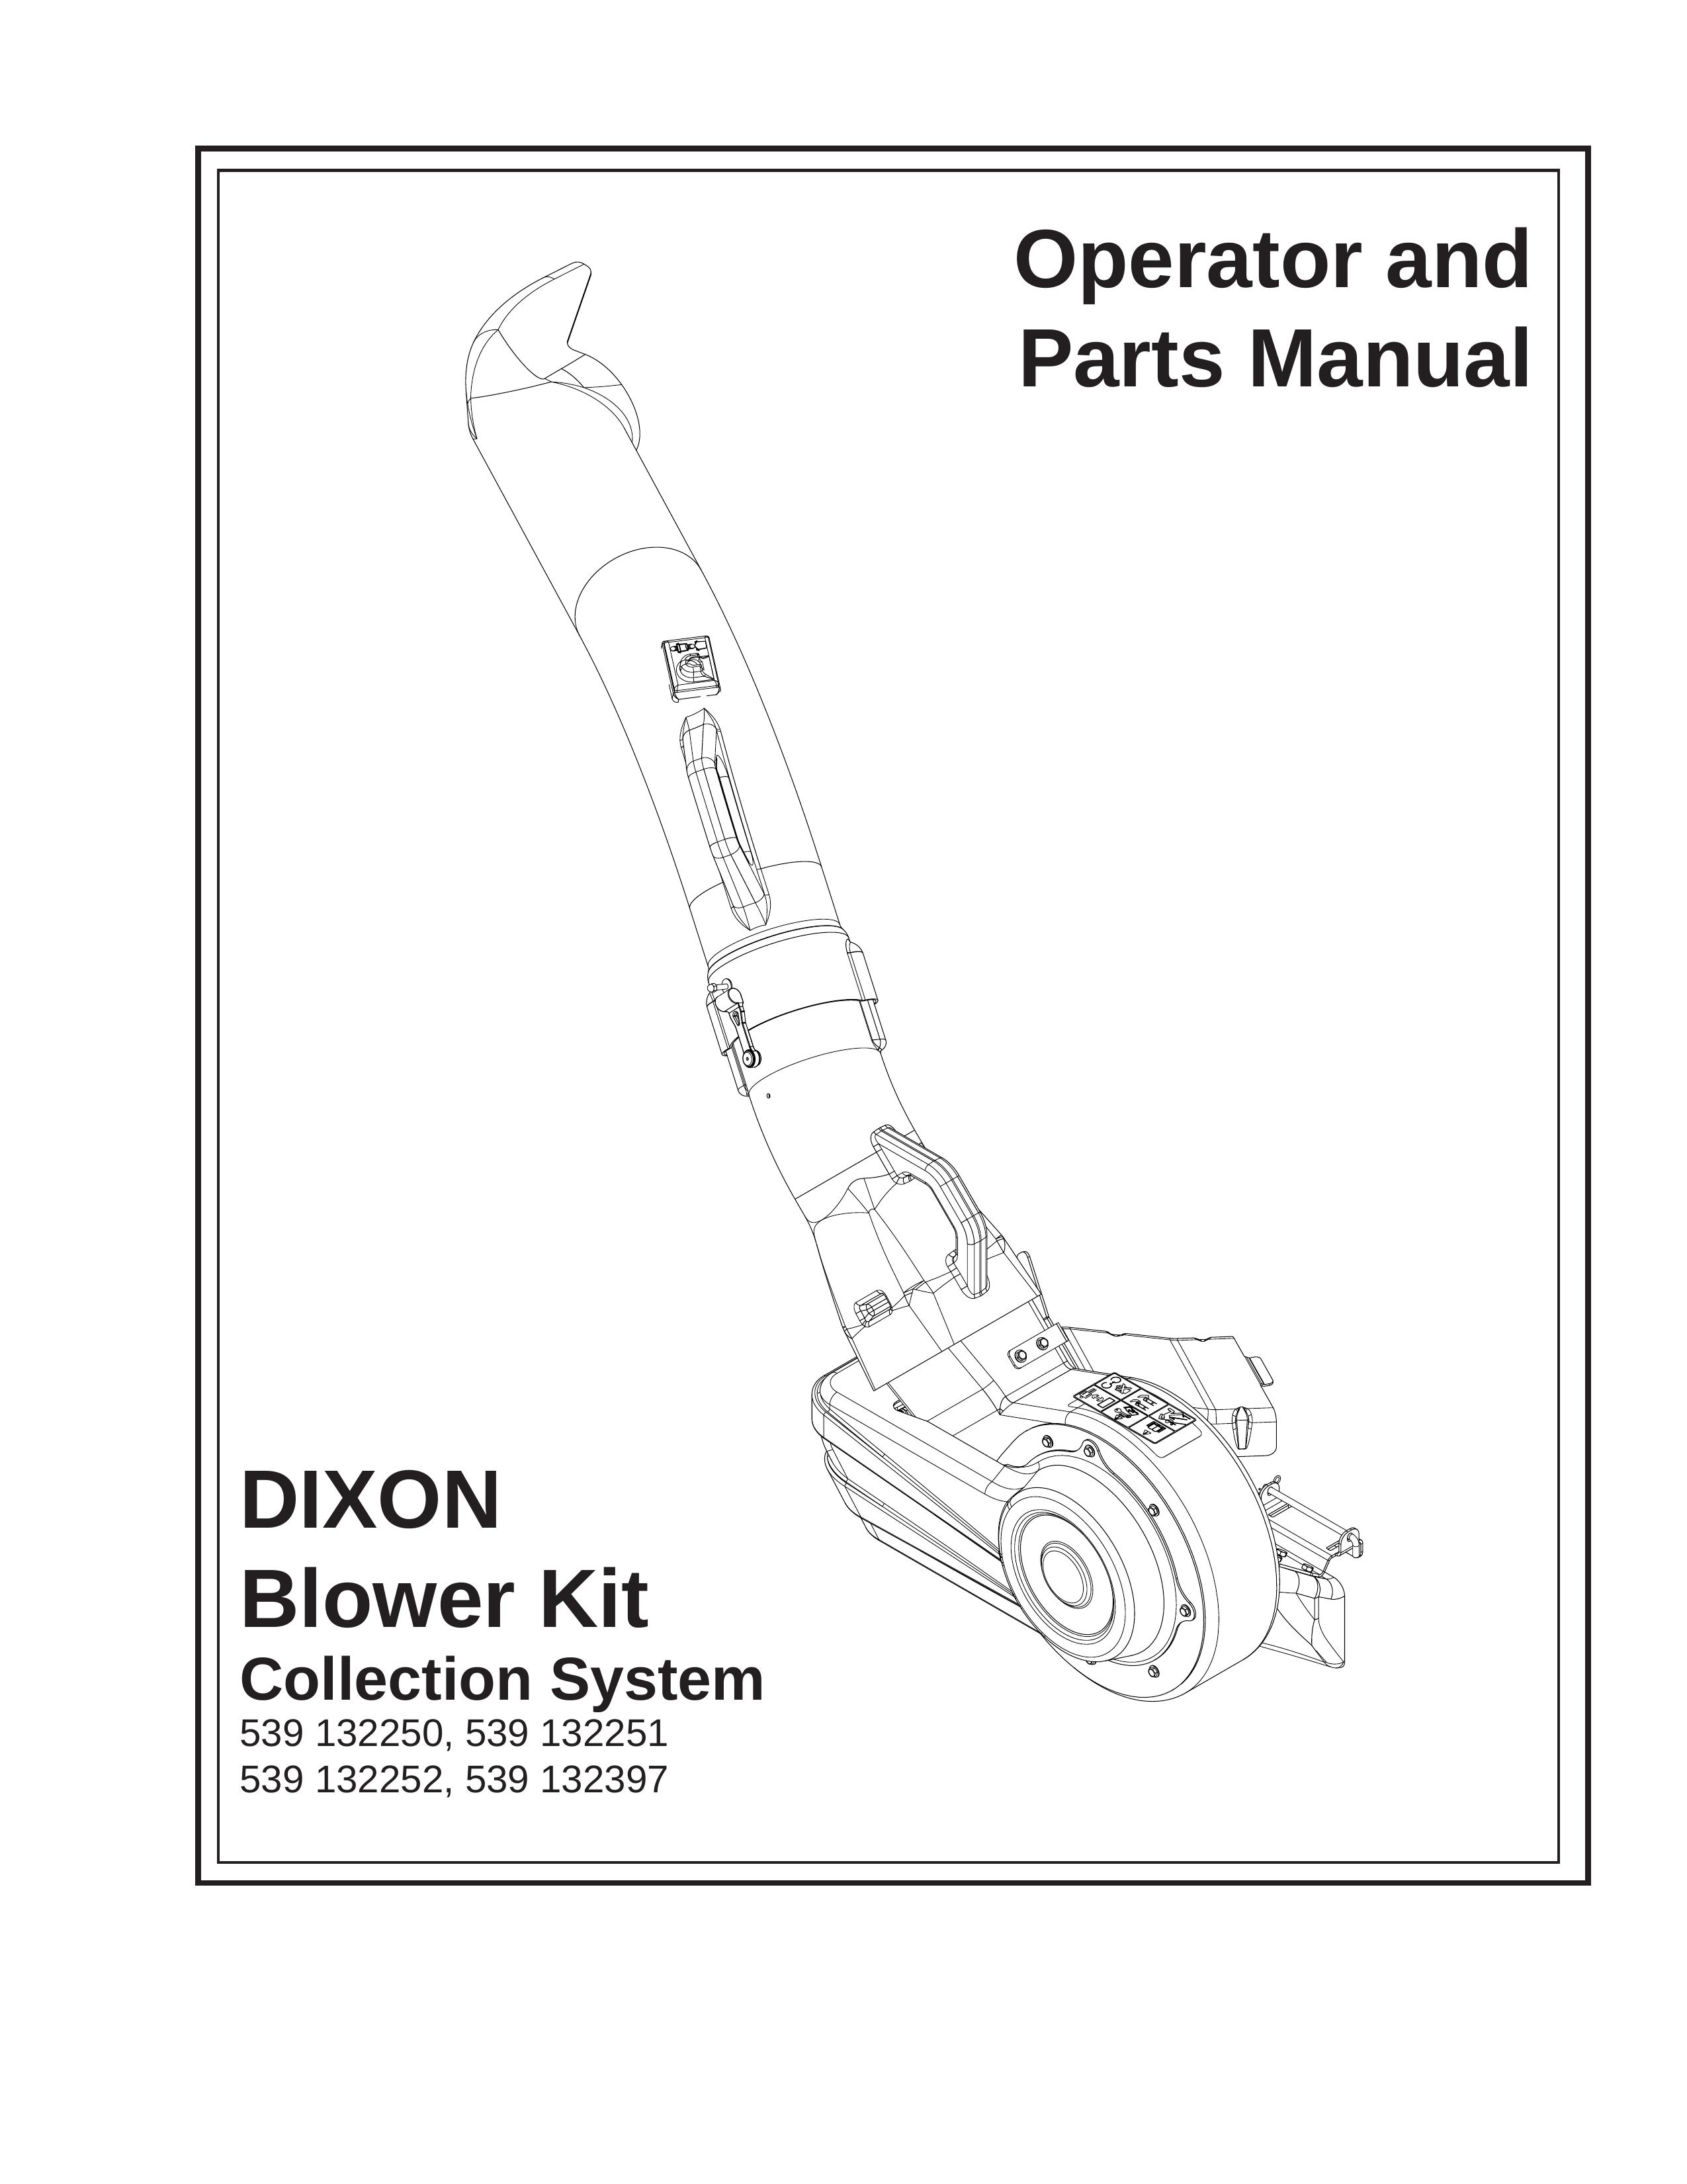 Dixon 539 132252 Blower User Manual